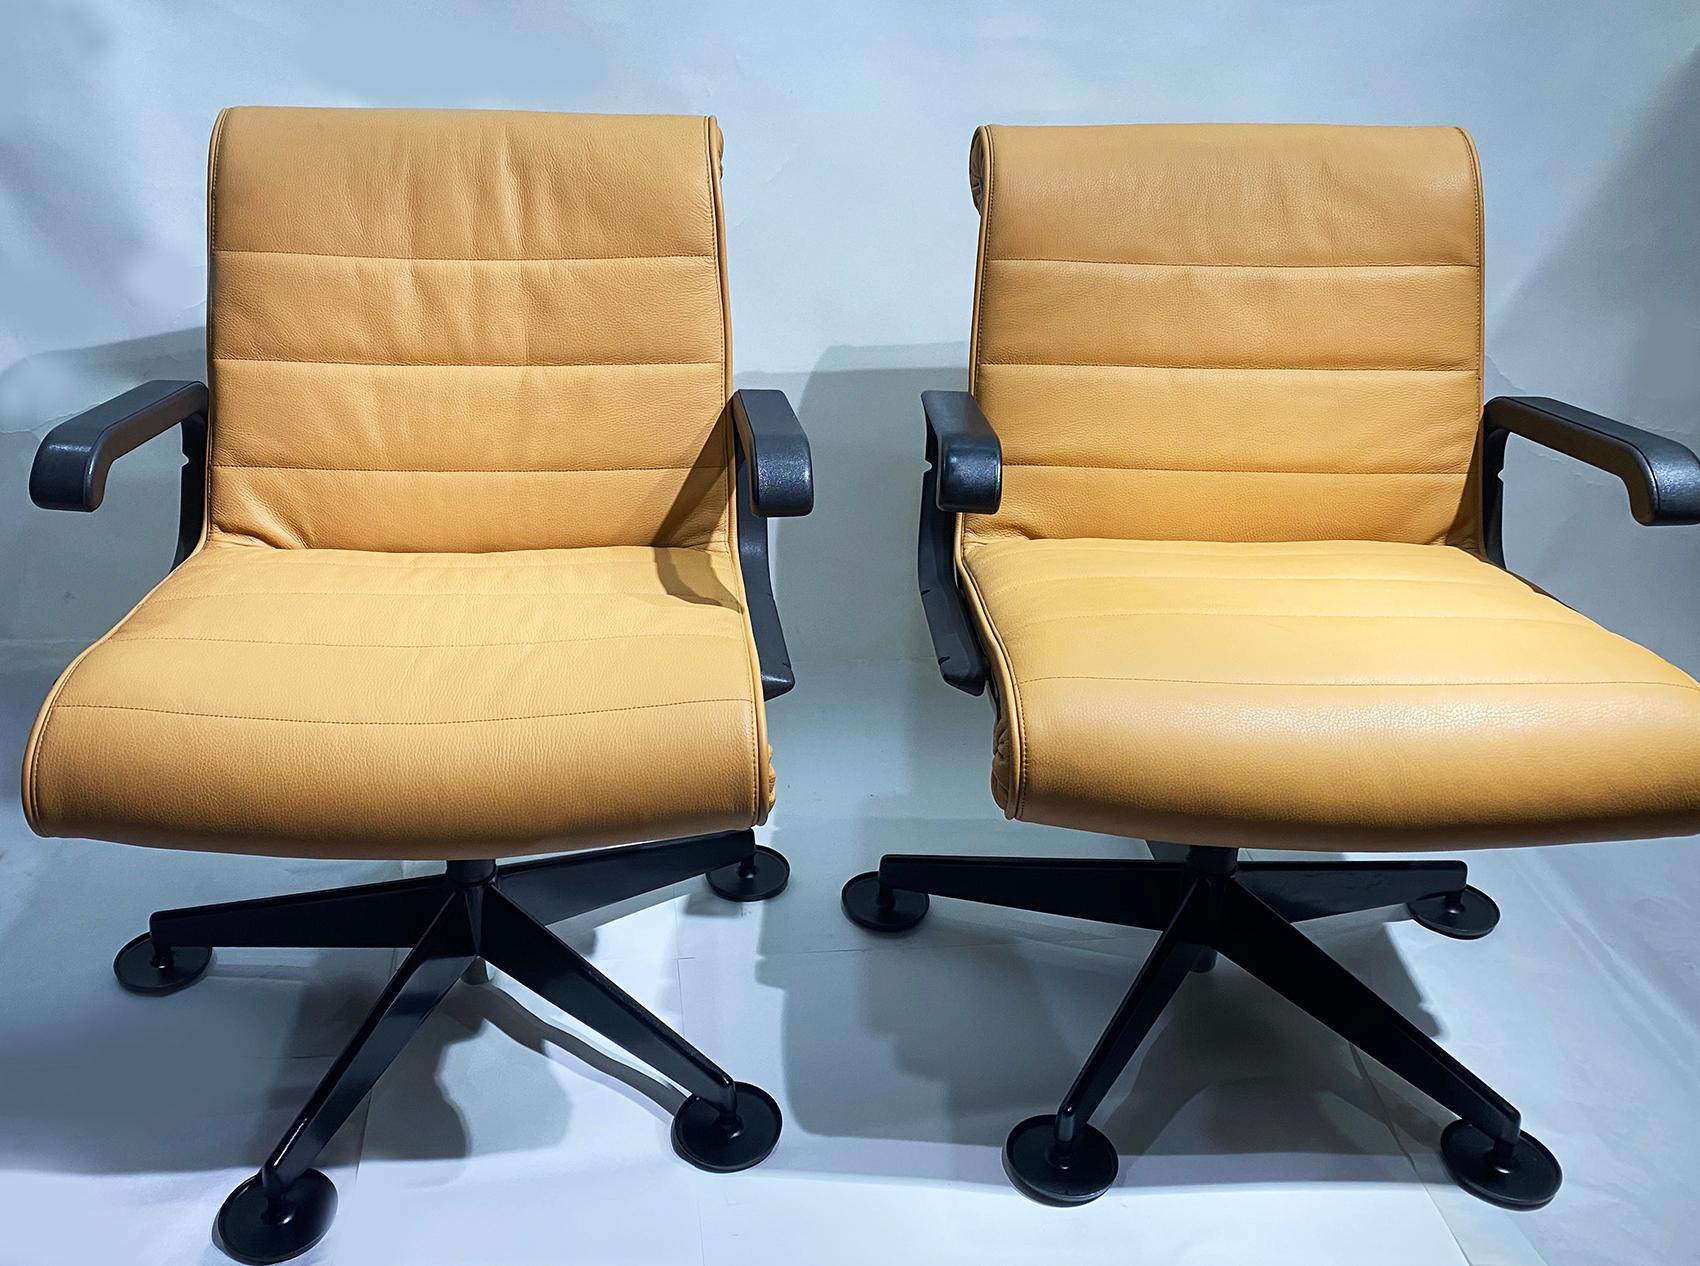 Un ensemble de deux fauteuils de bureau de direction conçus par Richard Sapper et fabriqués par Knoll. 
Bases à cinq étoiles rembourrées en cuir fin Couleur désert.
Sapper fusionne des lignes élégantes avec des caractéristiques ergonomiques